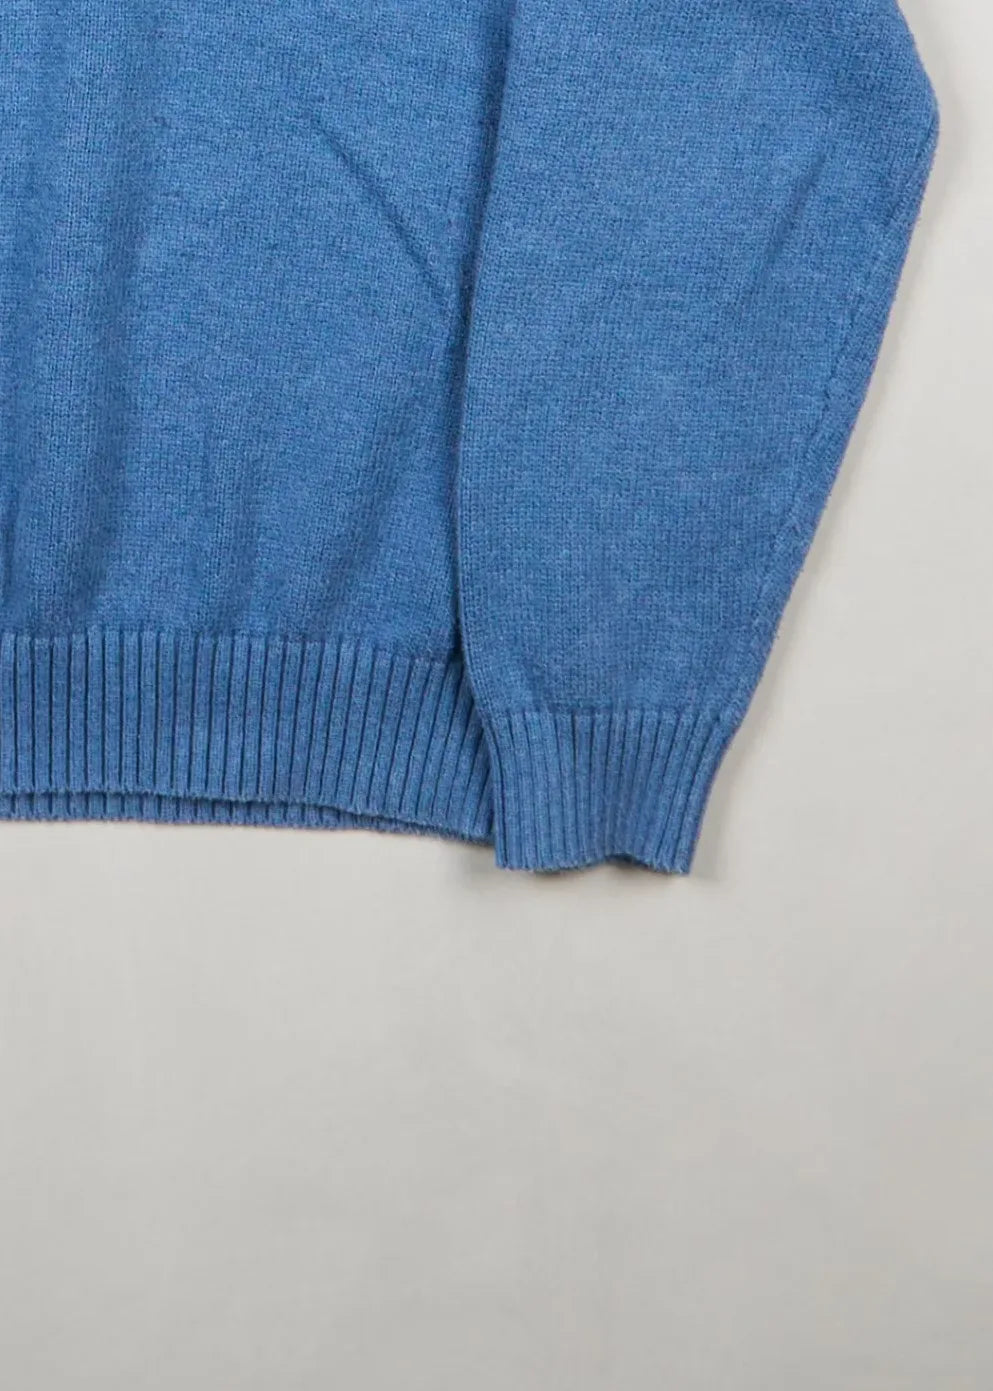 Ralph Lauren - Sweater (L) Bottom Right